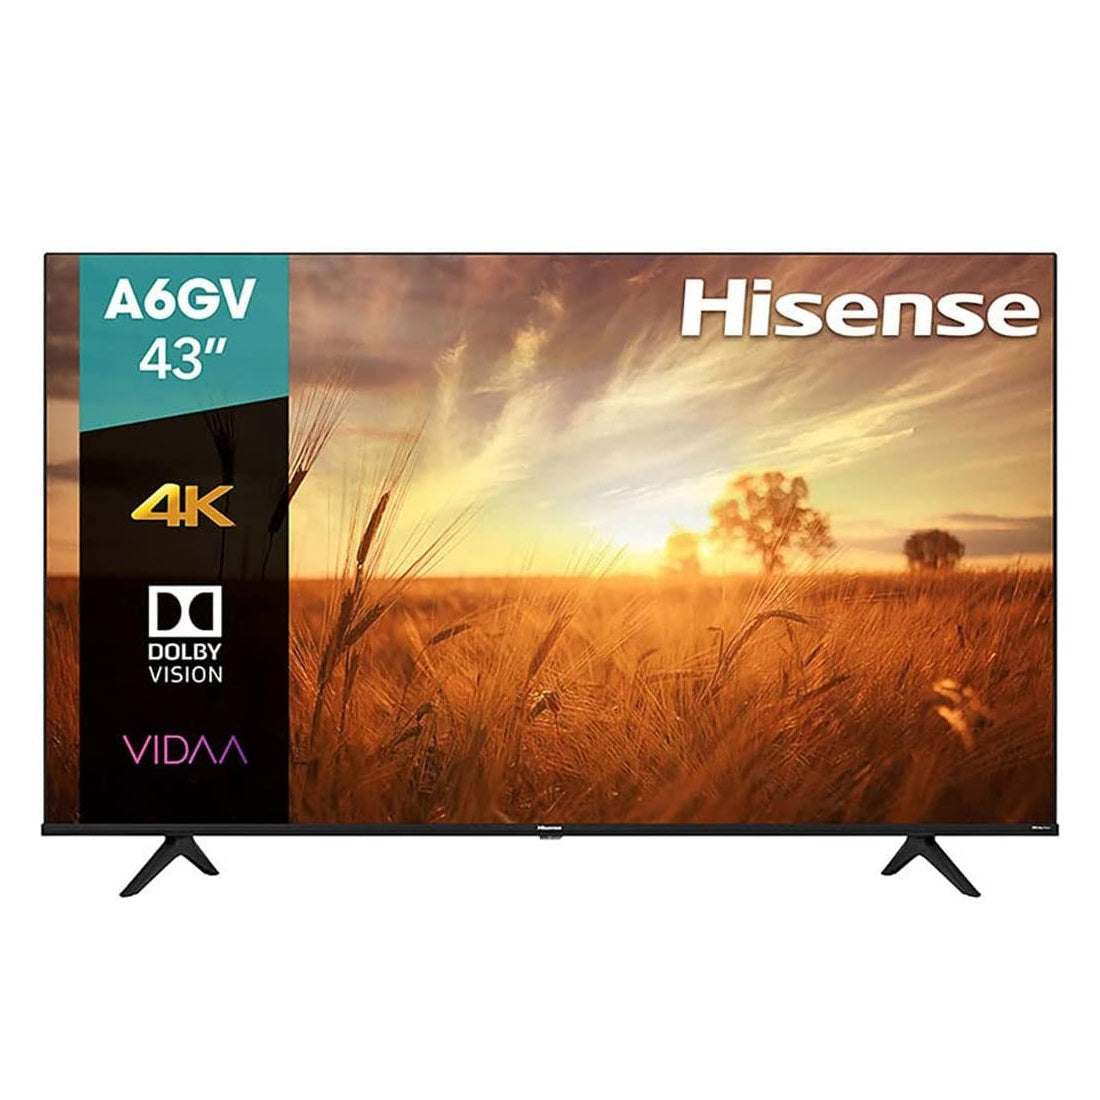 Pantalla LED Hisense 43 Smart TV 43A6GV – Foly Muebles la mueblería más  grande de la región